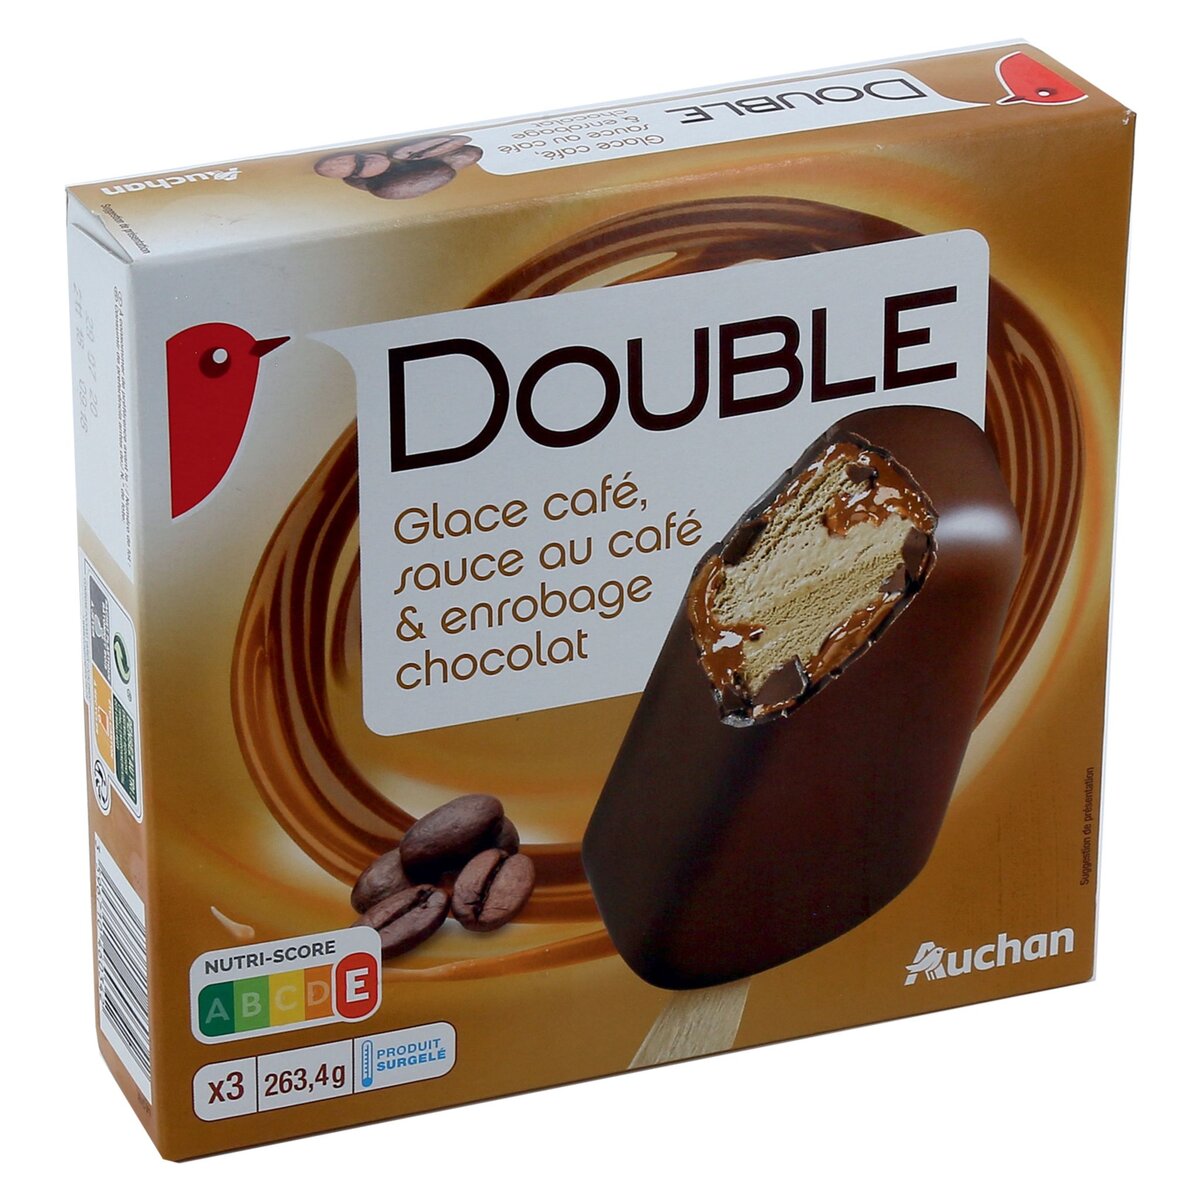 AUCHAN Auchan Batônnet glacé au café, sauce au café et enrobé de chocolat x3-264g 3 pièces 264g